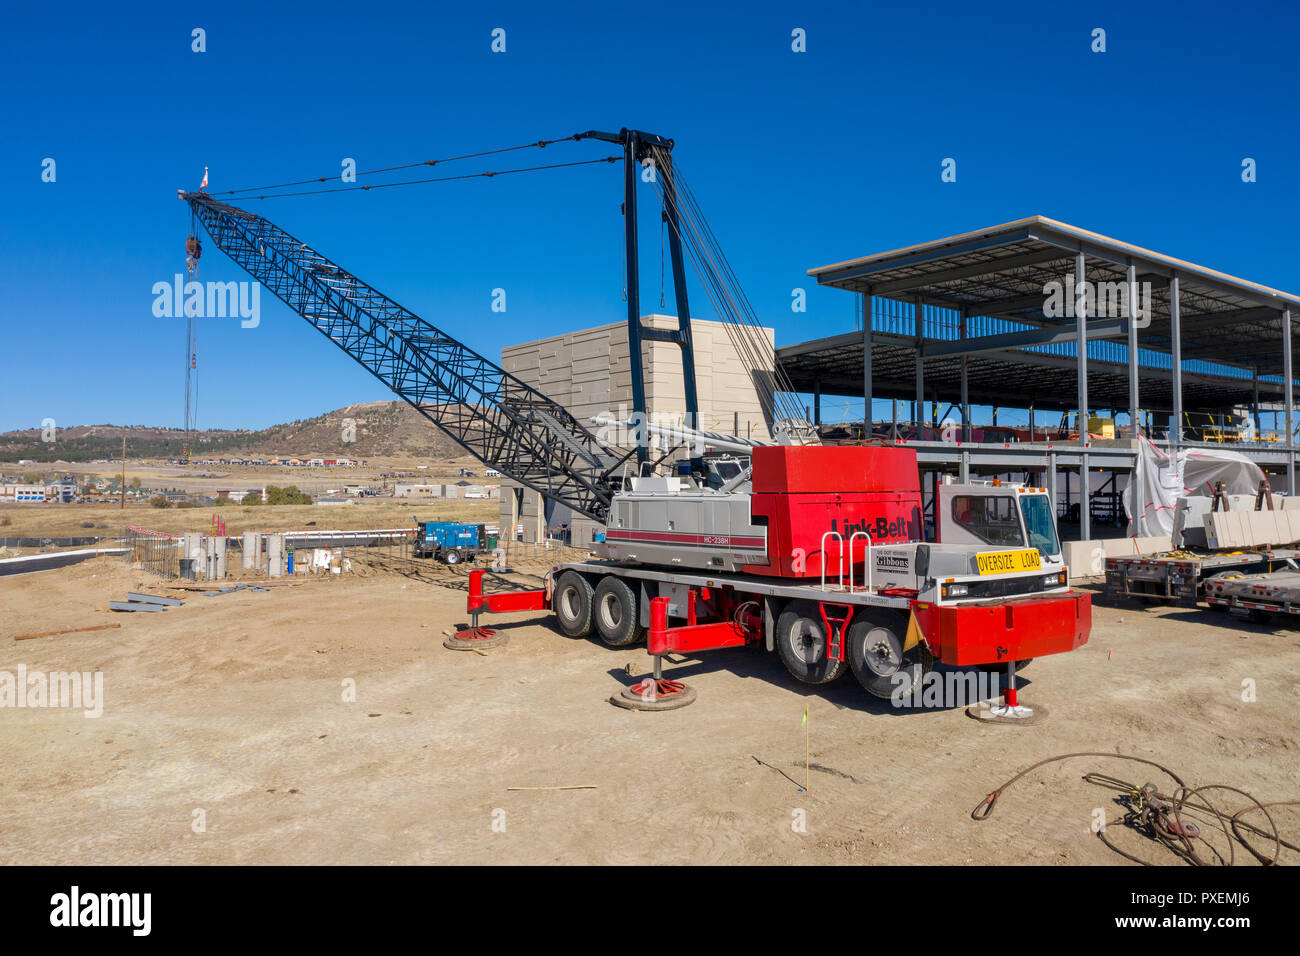 Construction crane at construction site Banque D'Images